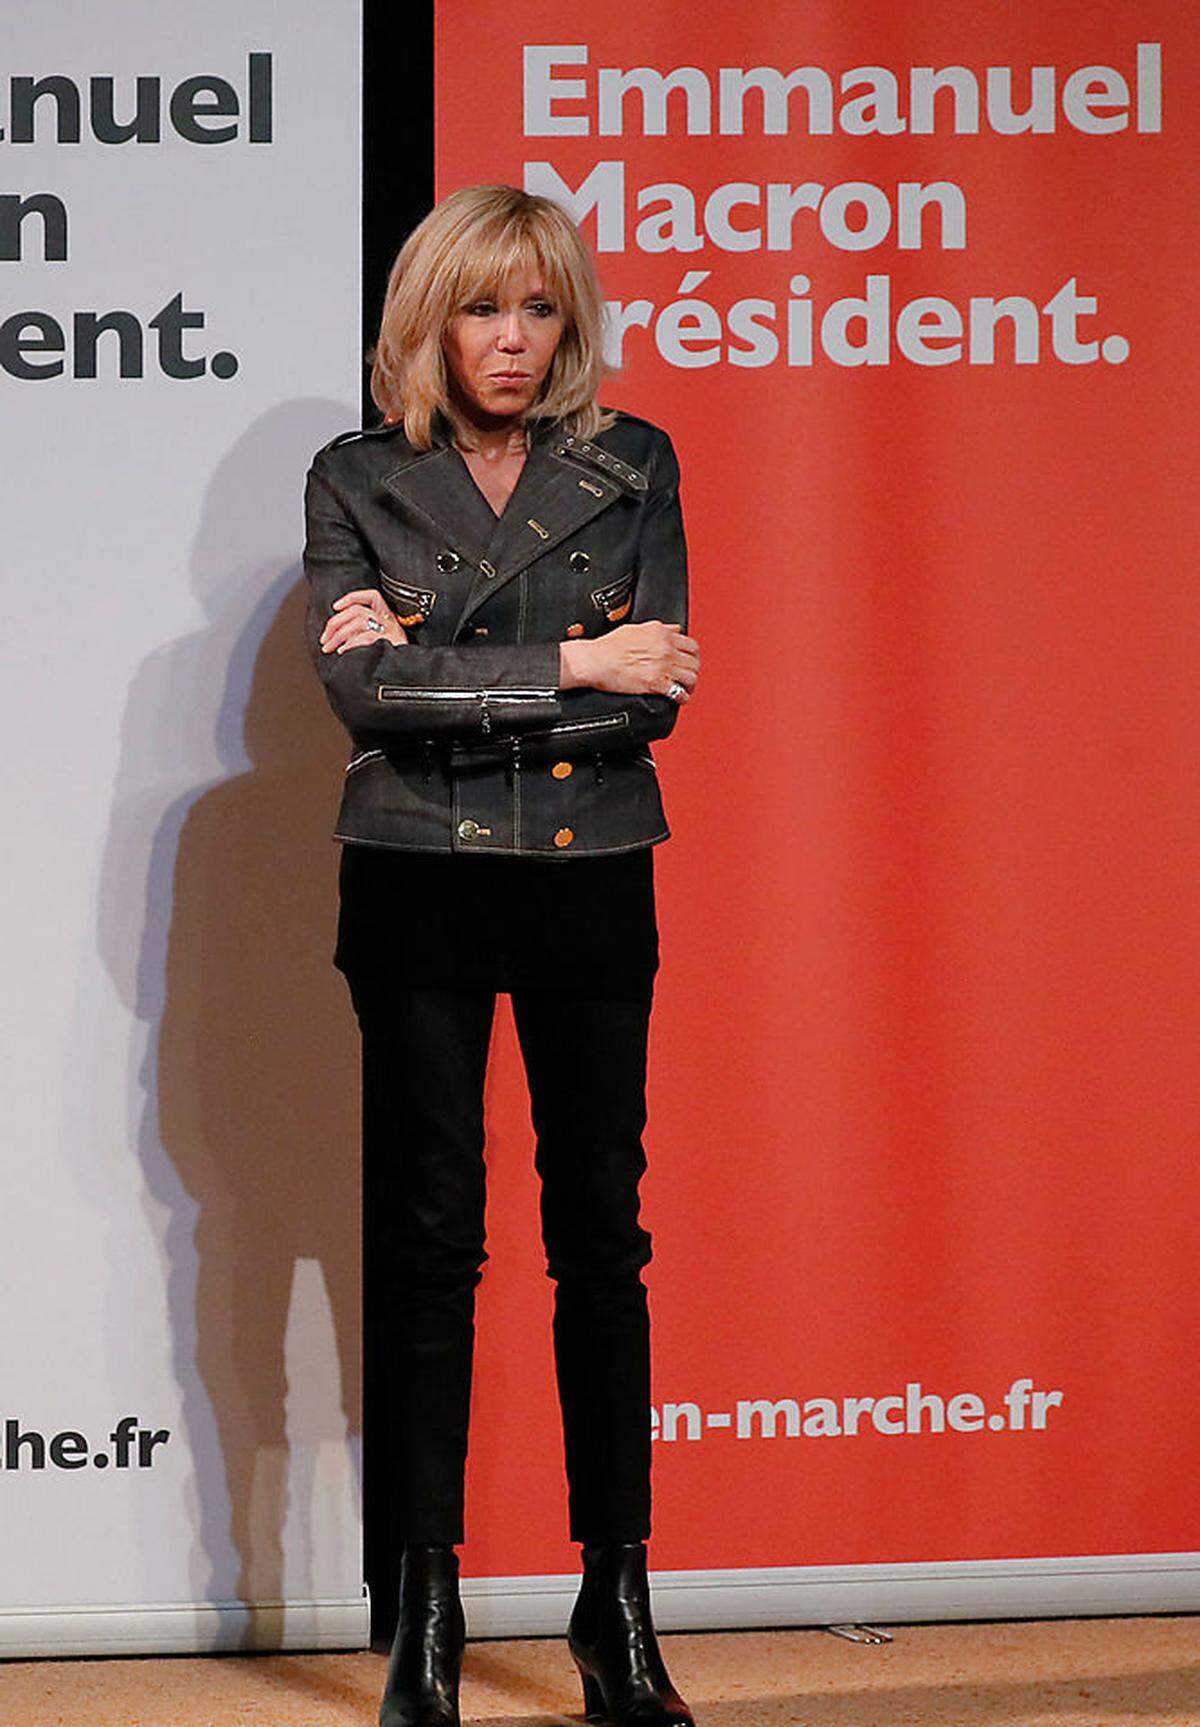 Macron präferiert einen beinahe rockigen Stil: Lederjacken, Skinny Jeans und vor allem Lederboots gehören zu den regelmäßigen Outfit-Bestandteilen für die neue Première dame.